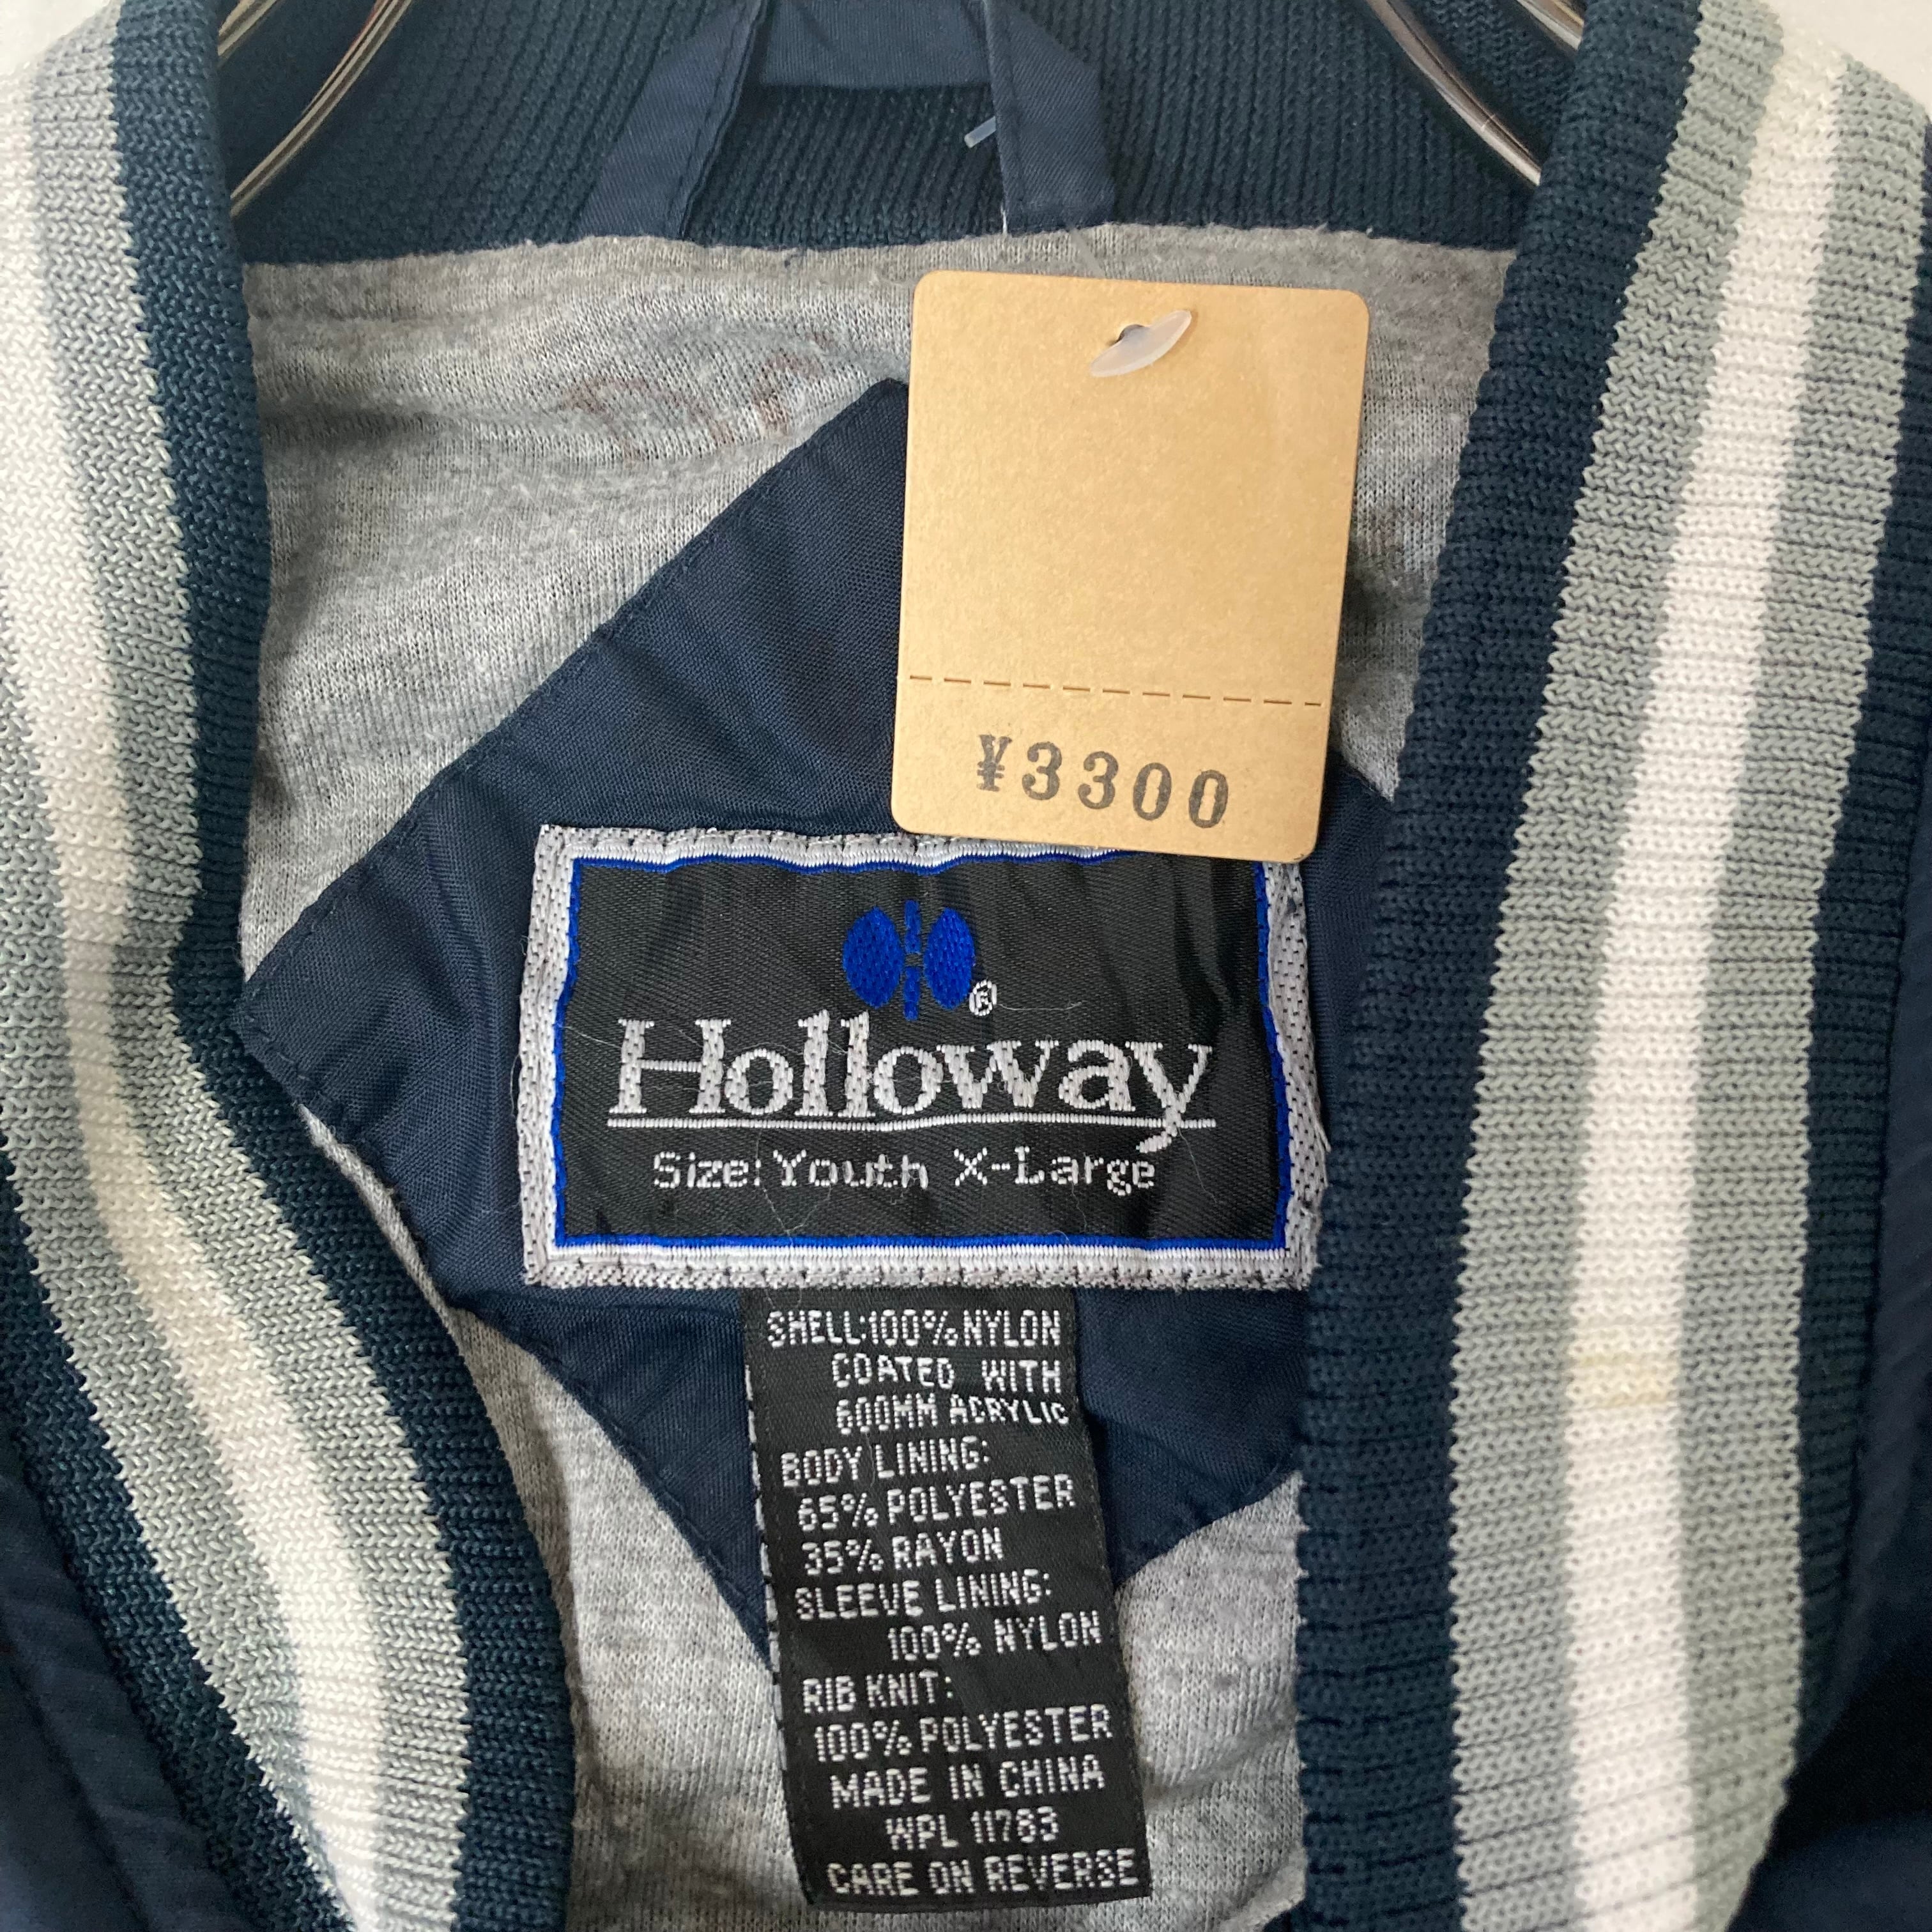 HOLLOWAY OHIO カレッジ 刺繍 パーカー XL プルオーバー